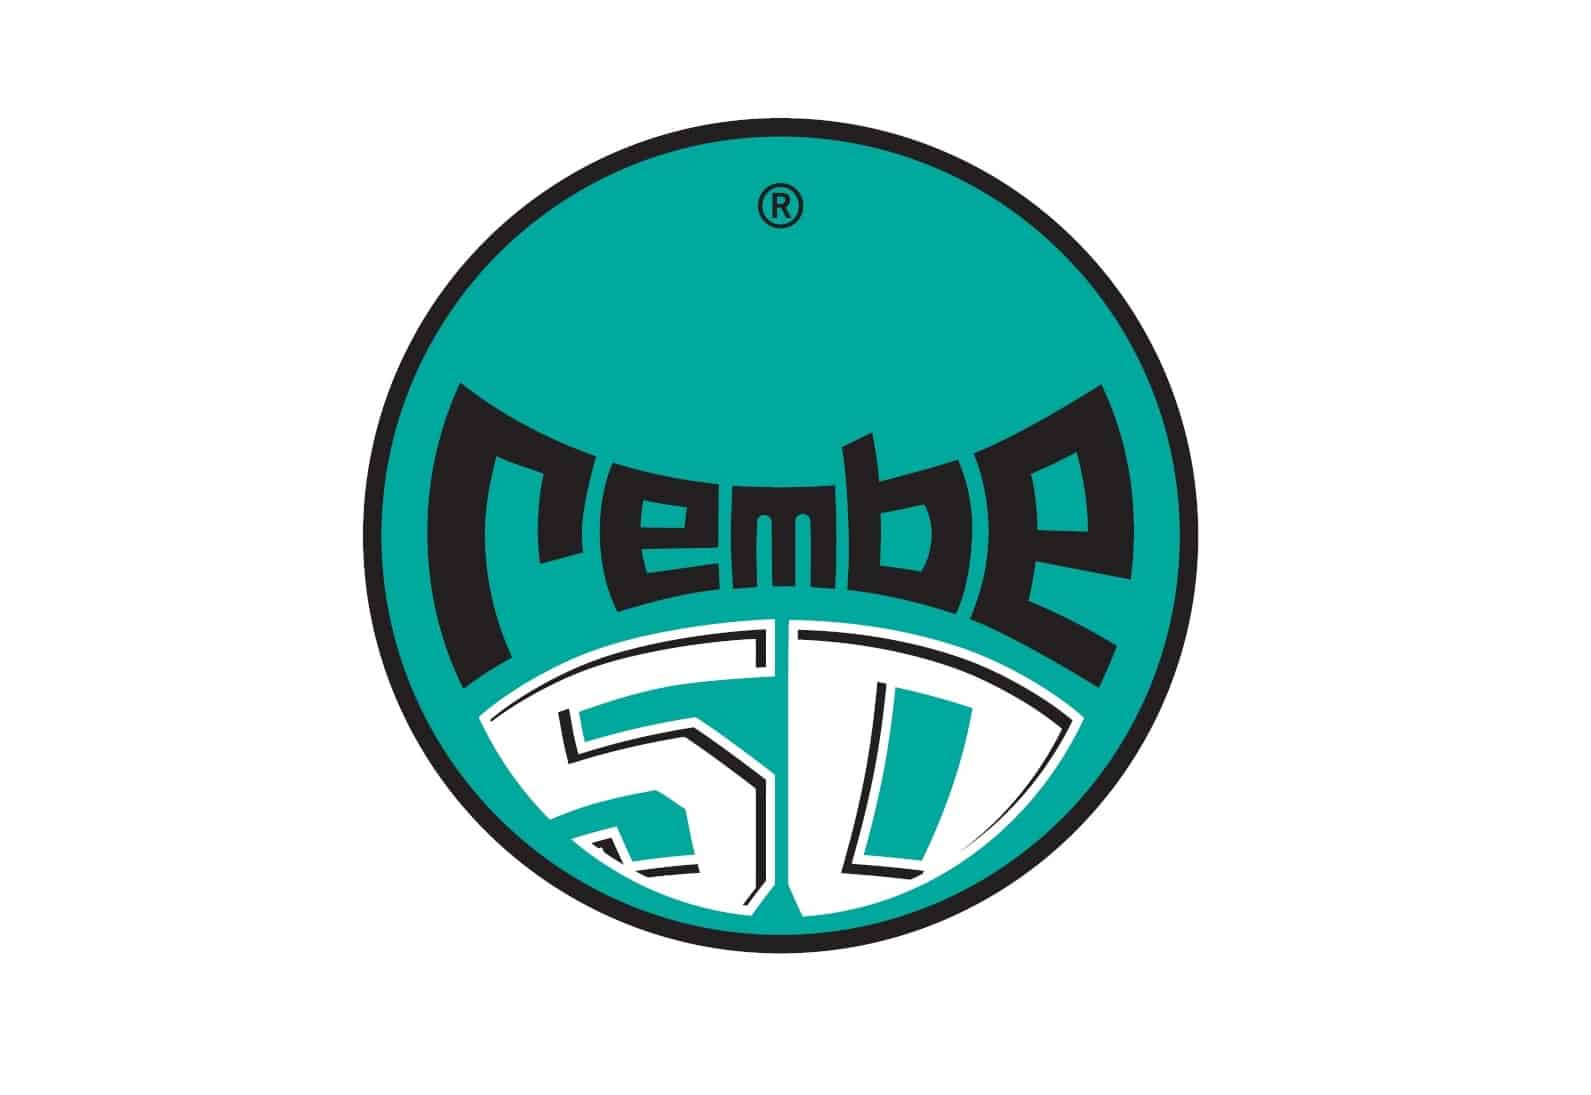 Logo, der Rembe in Form eines Balles. Grüner Hintergrund, schwarze Schrift für Rembe, außen größer als innen, darunter eine 50 in Weiß. Ganz oben das eingetragene Markenzeichen, auf schuettgutmagazin.de